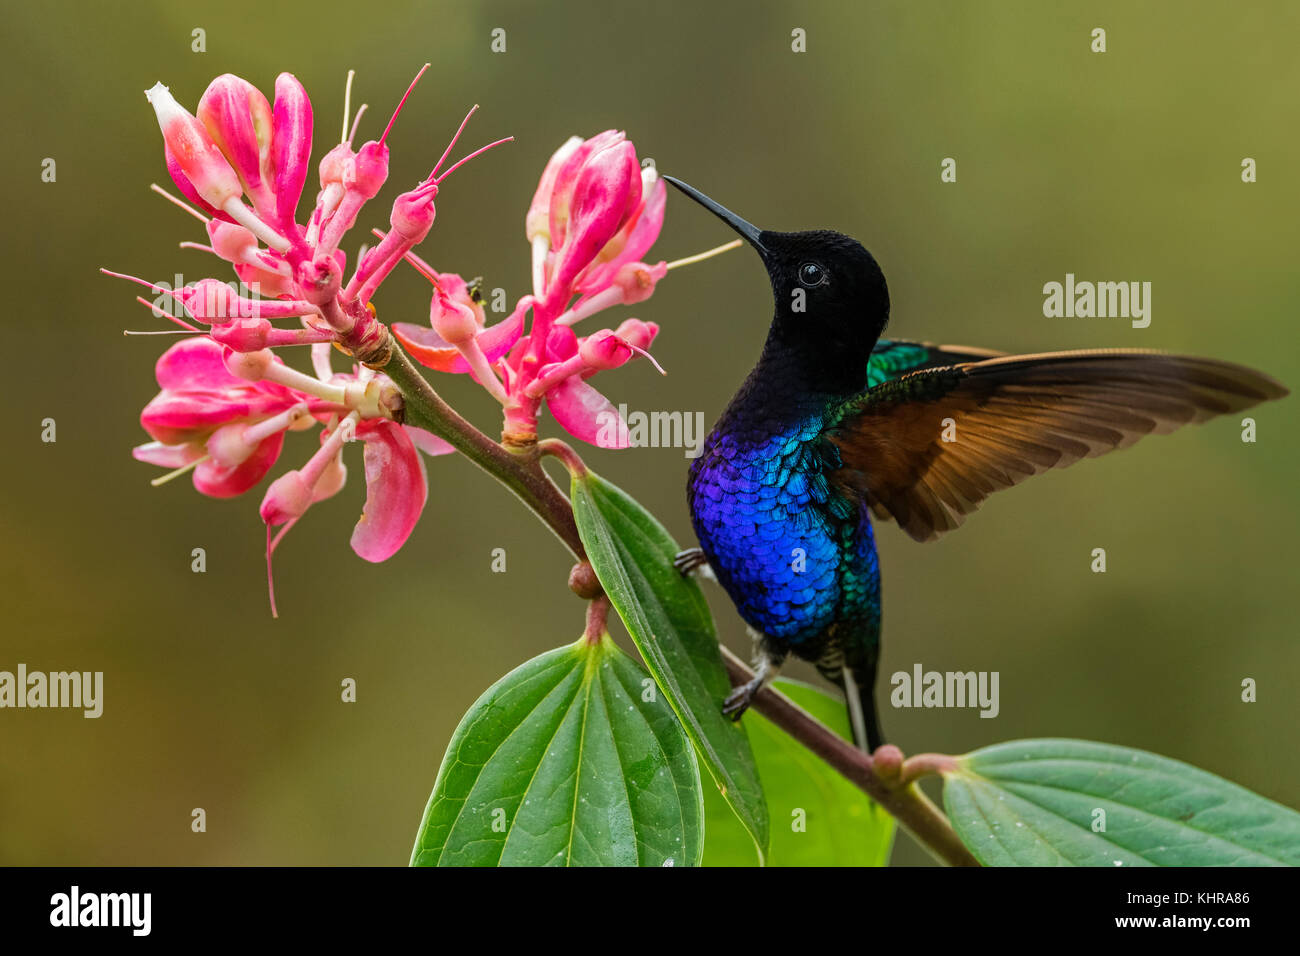 Coroneta de terciopelo-púrpura (Boissonneaua jardini) colibrí que se alimenta de néctar de flores, Reserva de aves las Tangas, Colombia Foto de stock